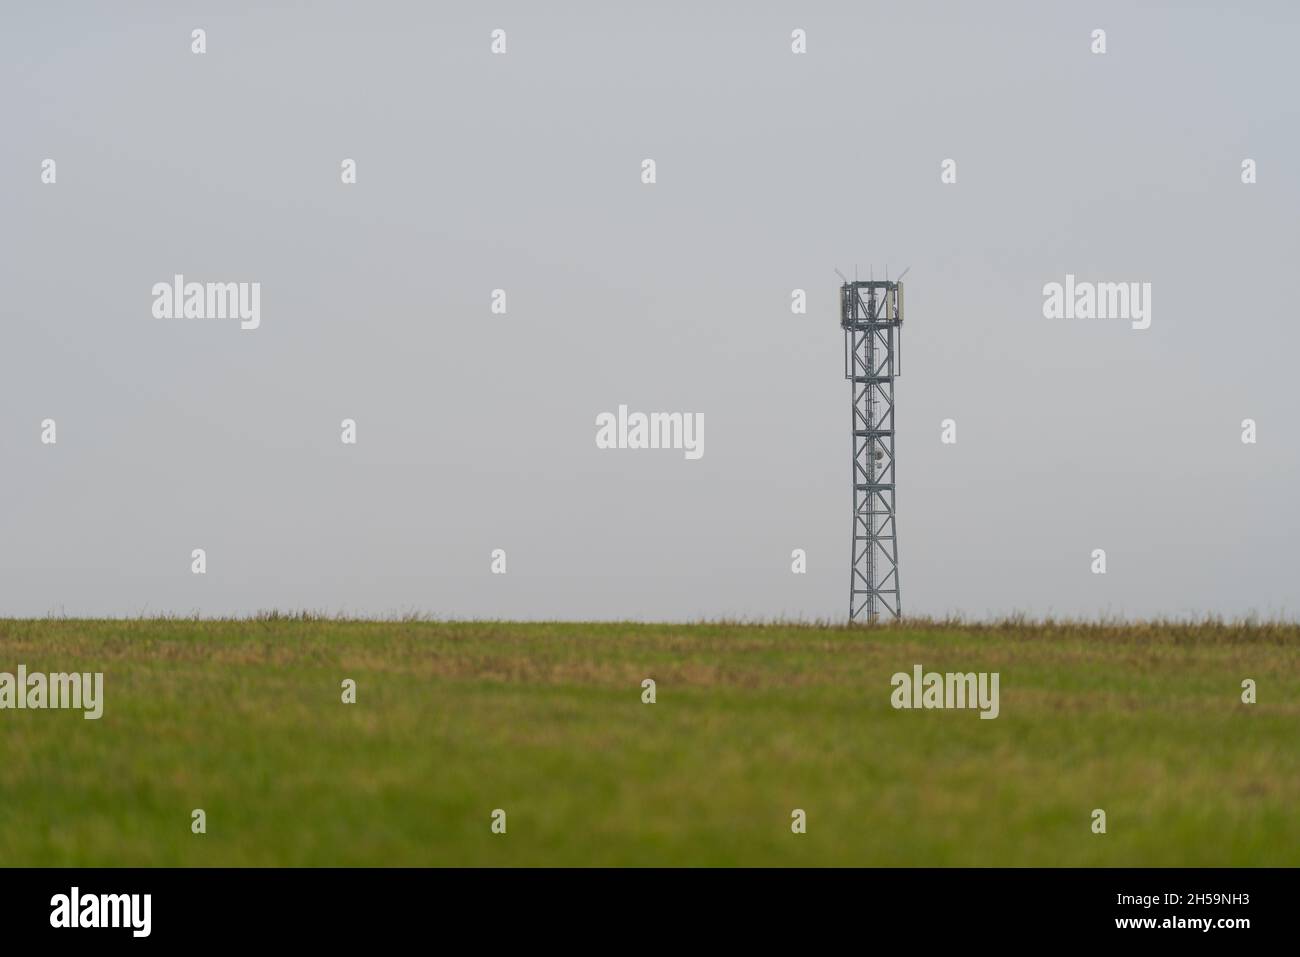 Mástil de antena de torre celular móvil que proporciona conexión móvil a Internet para el área rural que se encuentra en un campo estéril vacío en un día de color gris oscuro y oscuro Foto de stock